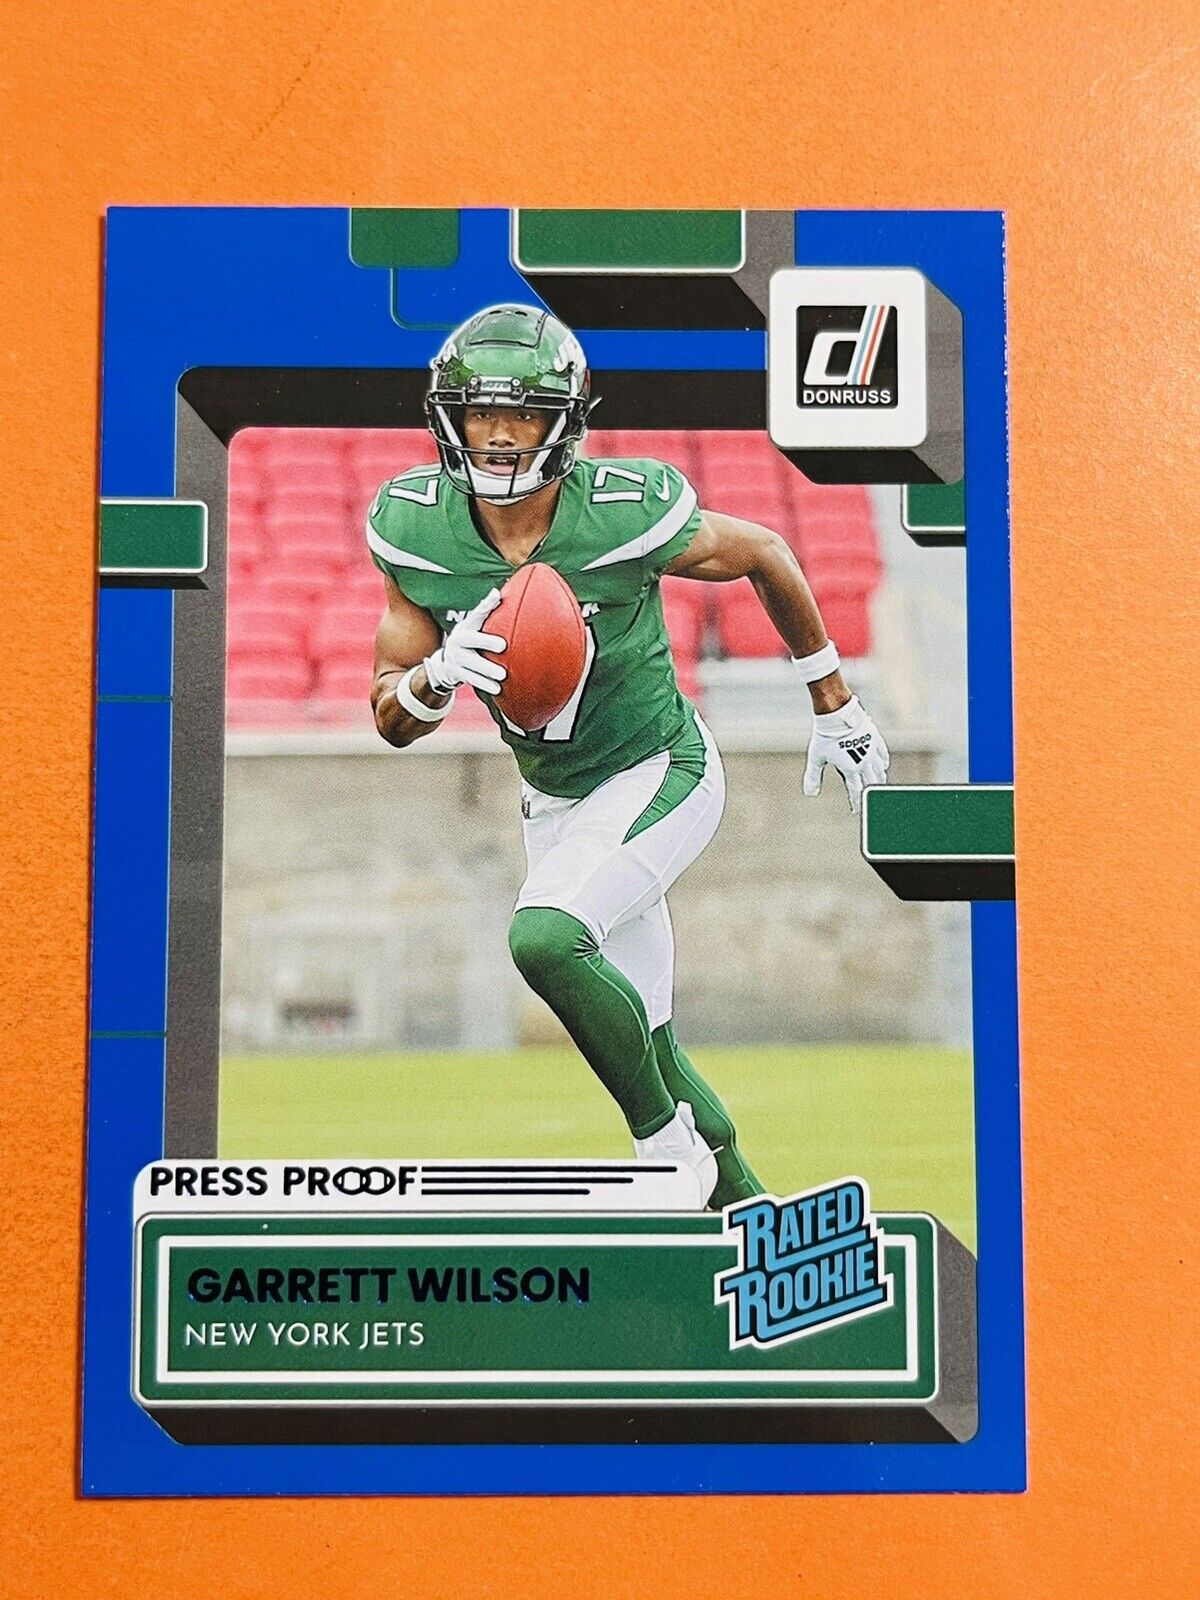 2022 Panini Donruss Rated Rookie Press Proof Blue Garrett Wilson #306 Jets RC